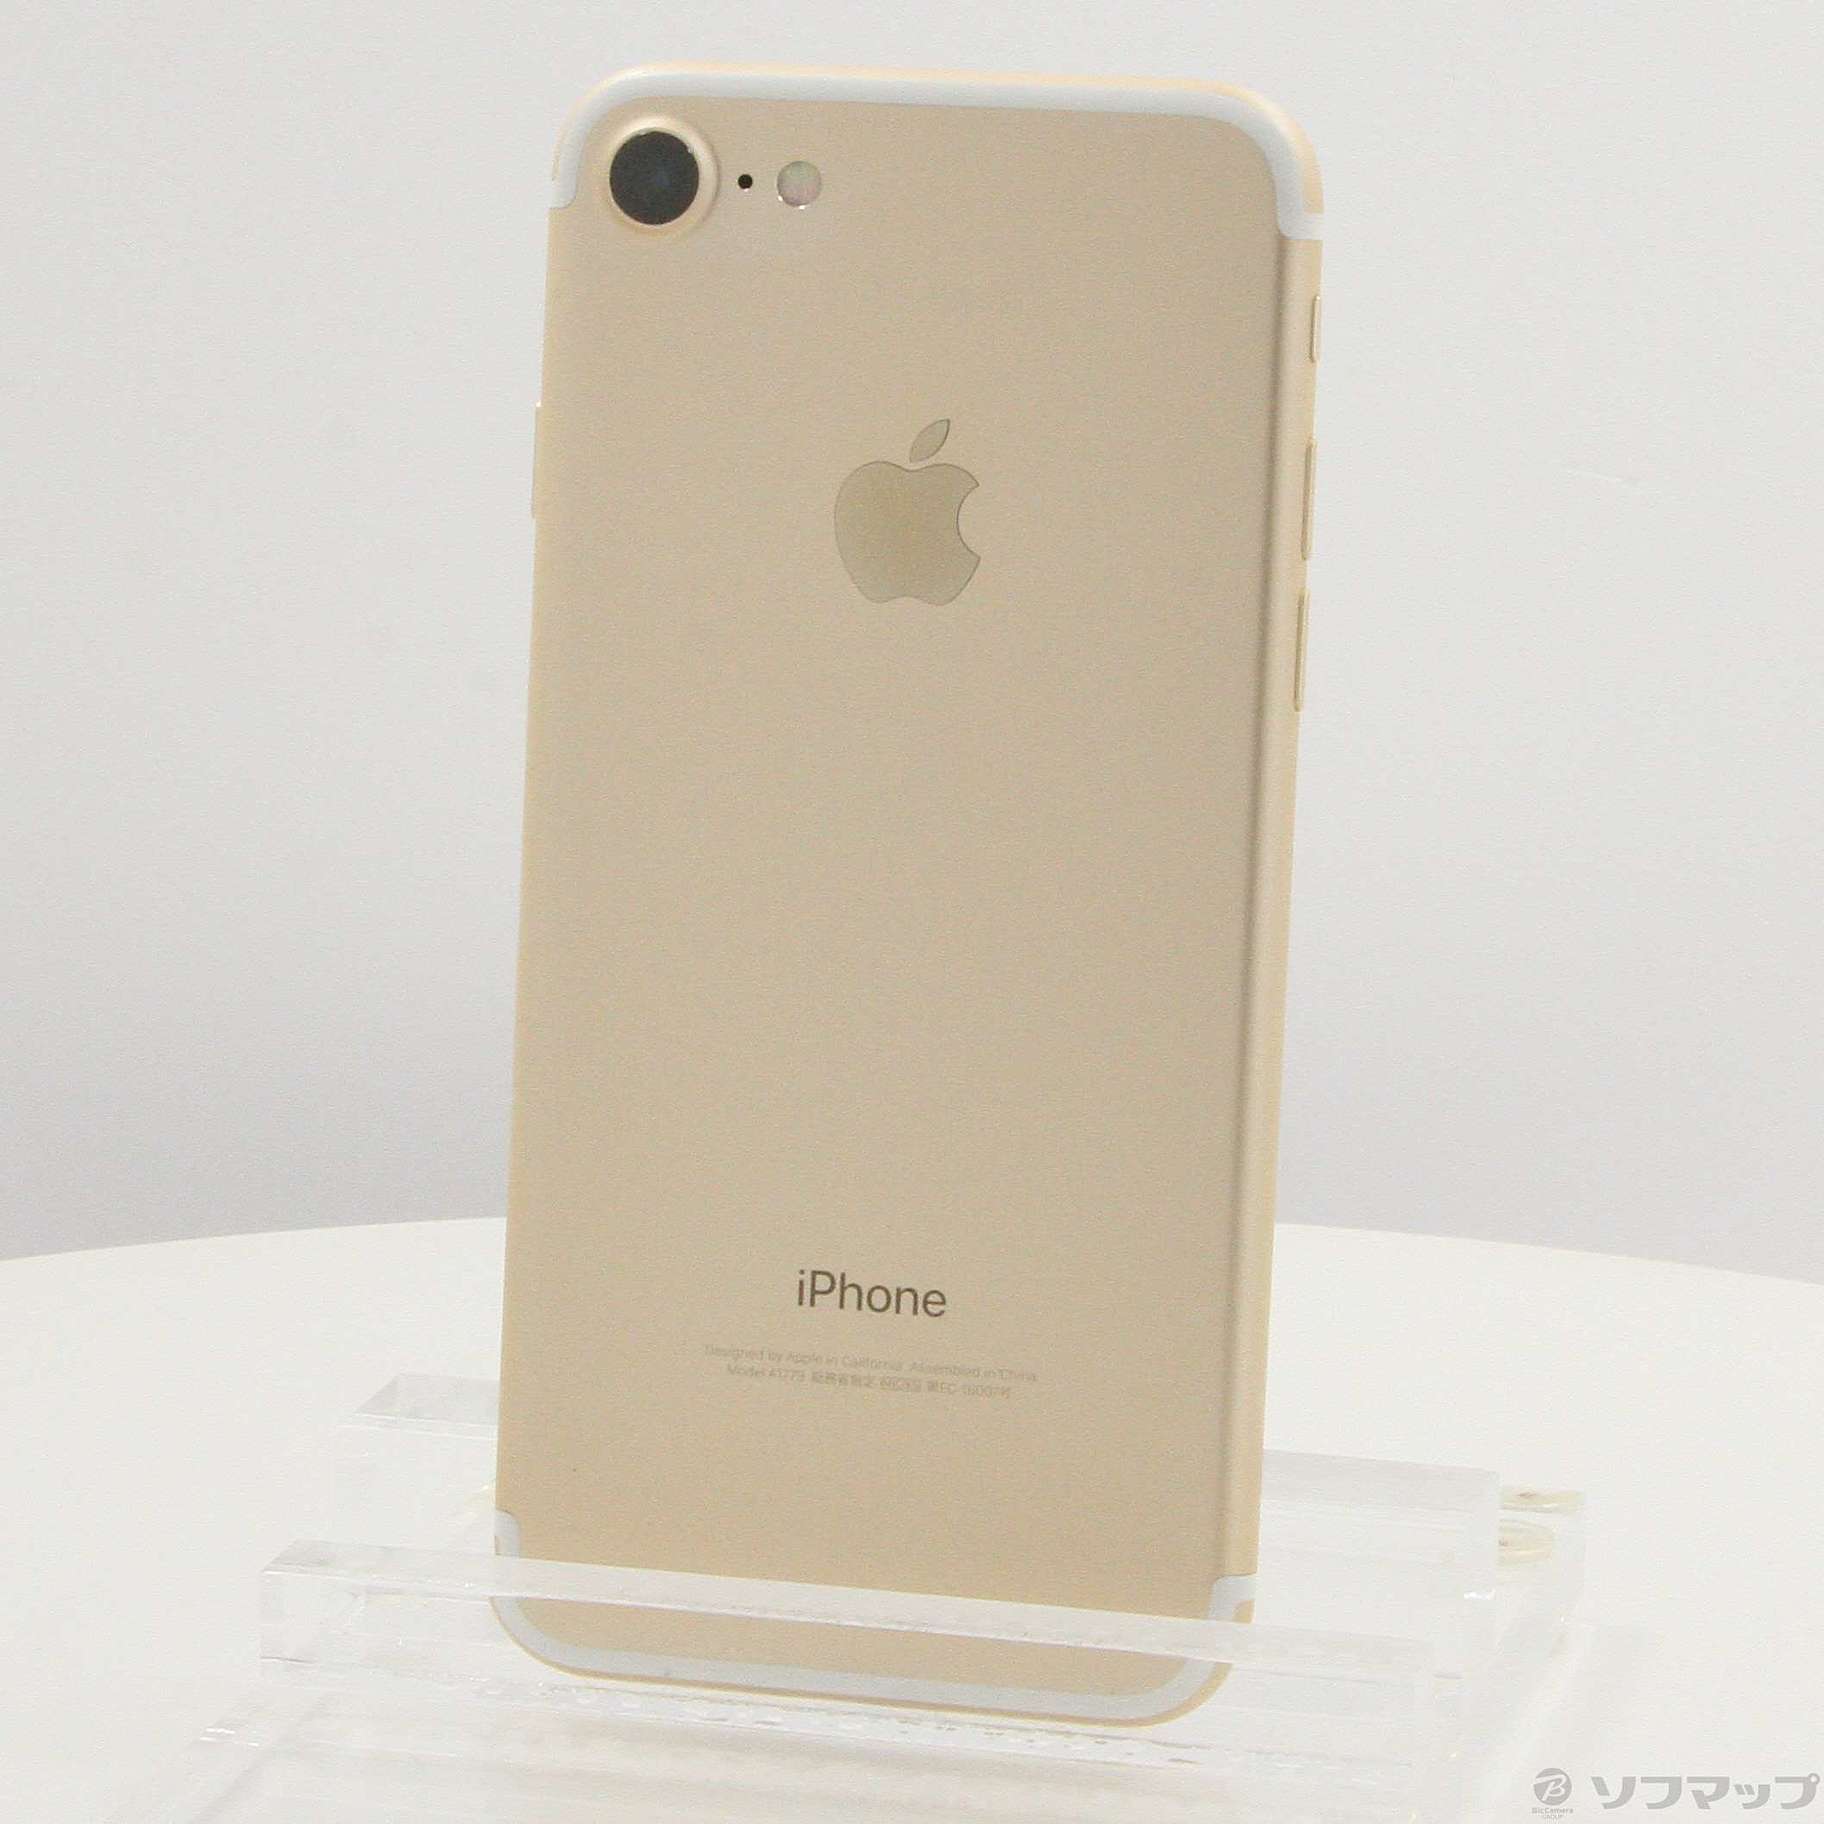 iPhone Gold 128 GB SIMフリー - 1